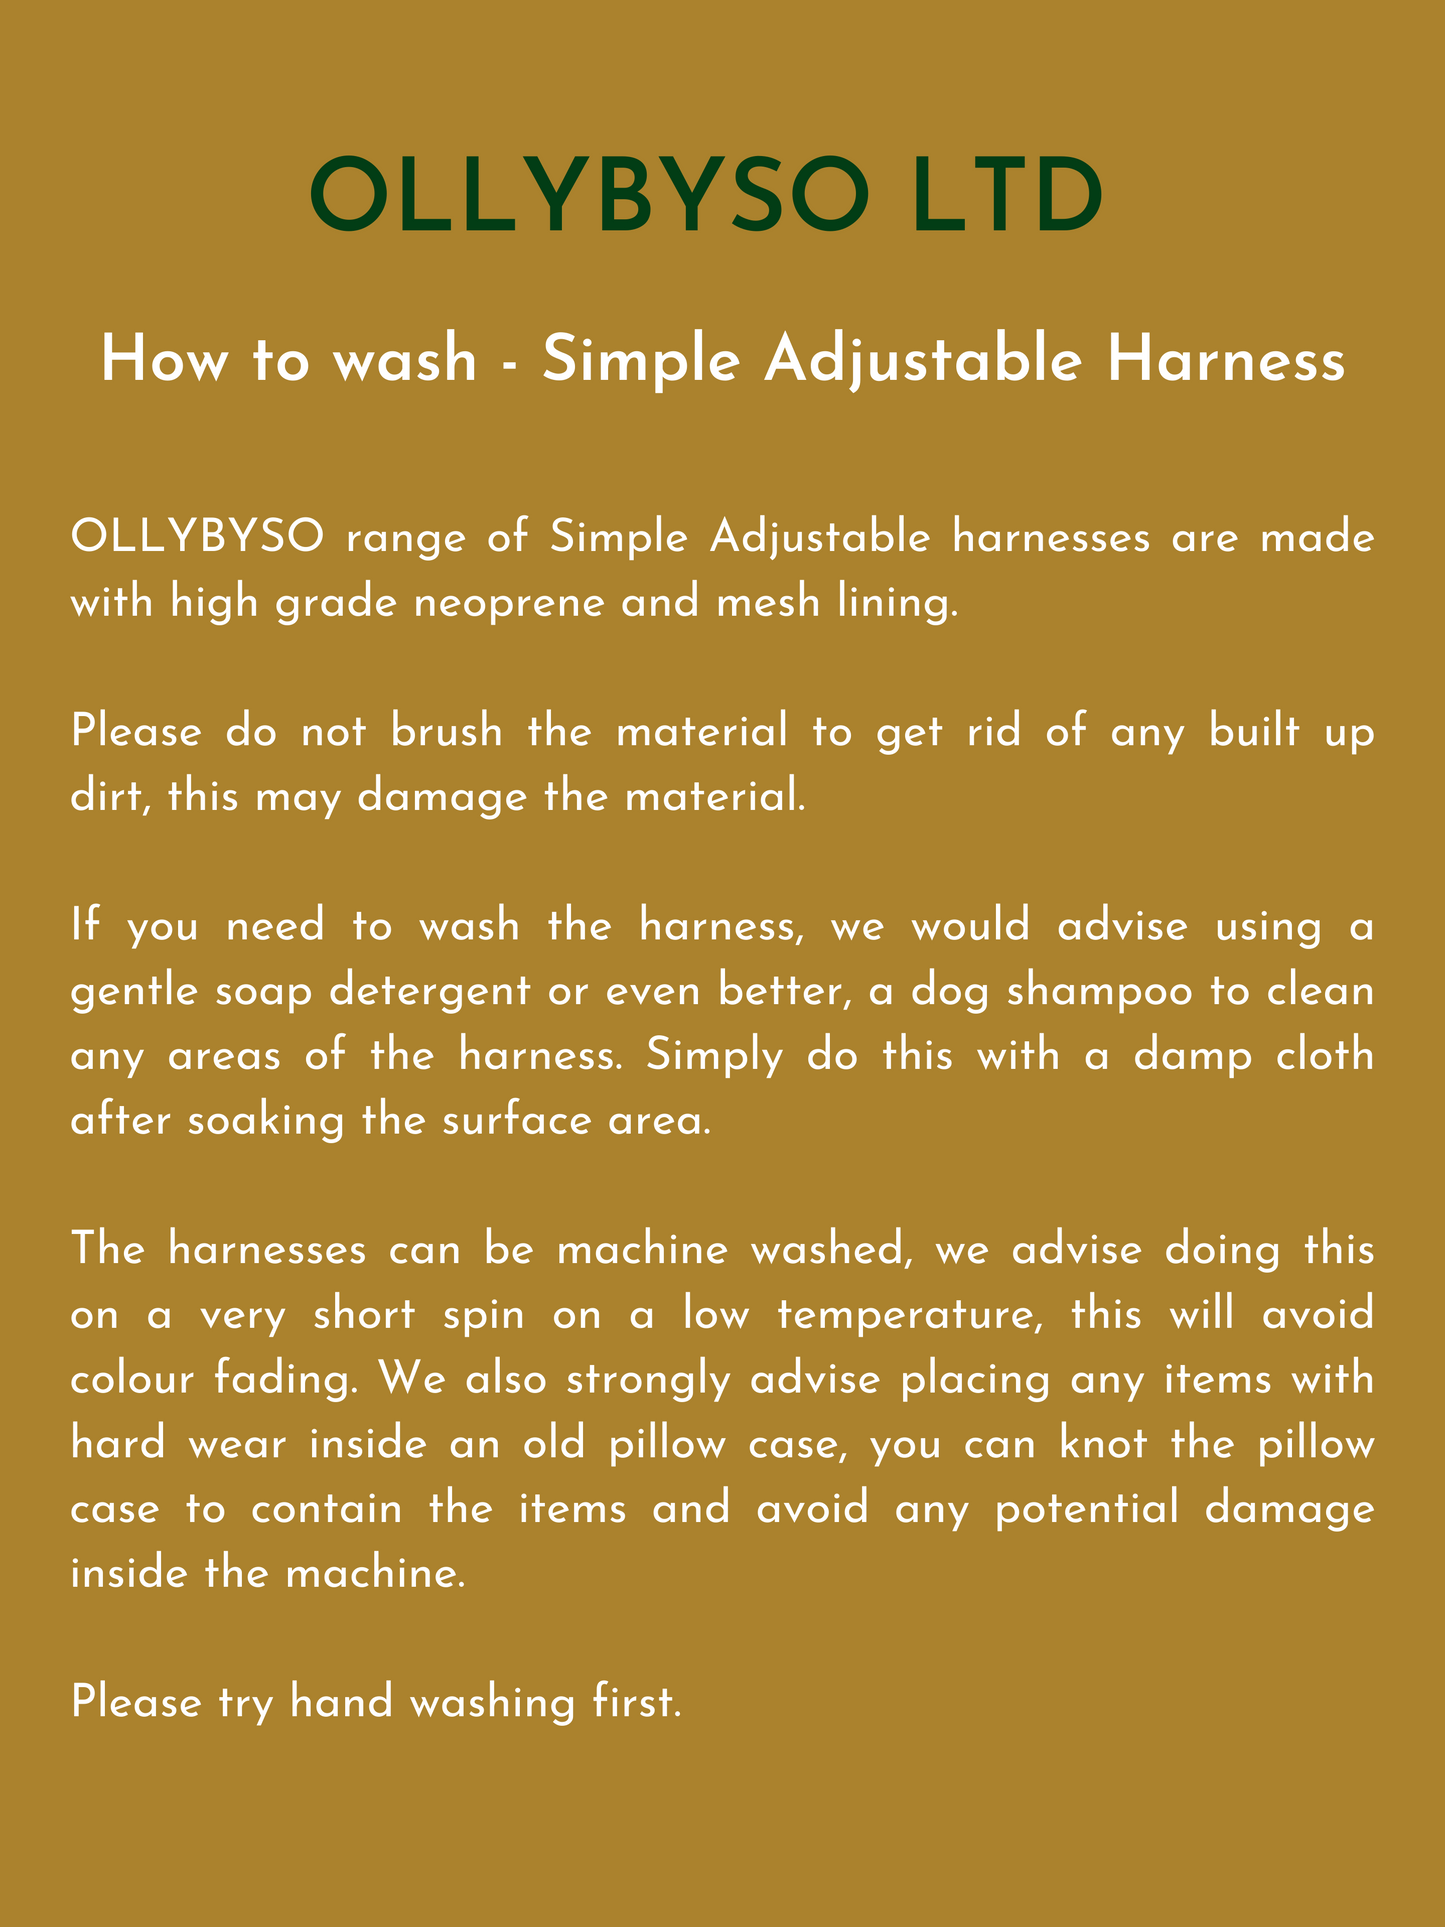 Simple Adjustable Harness Sage